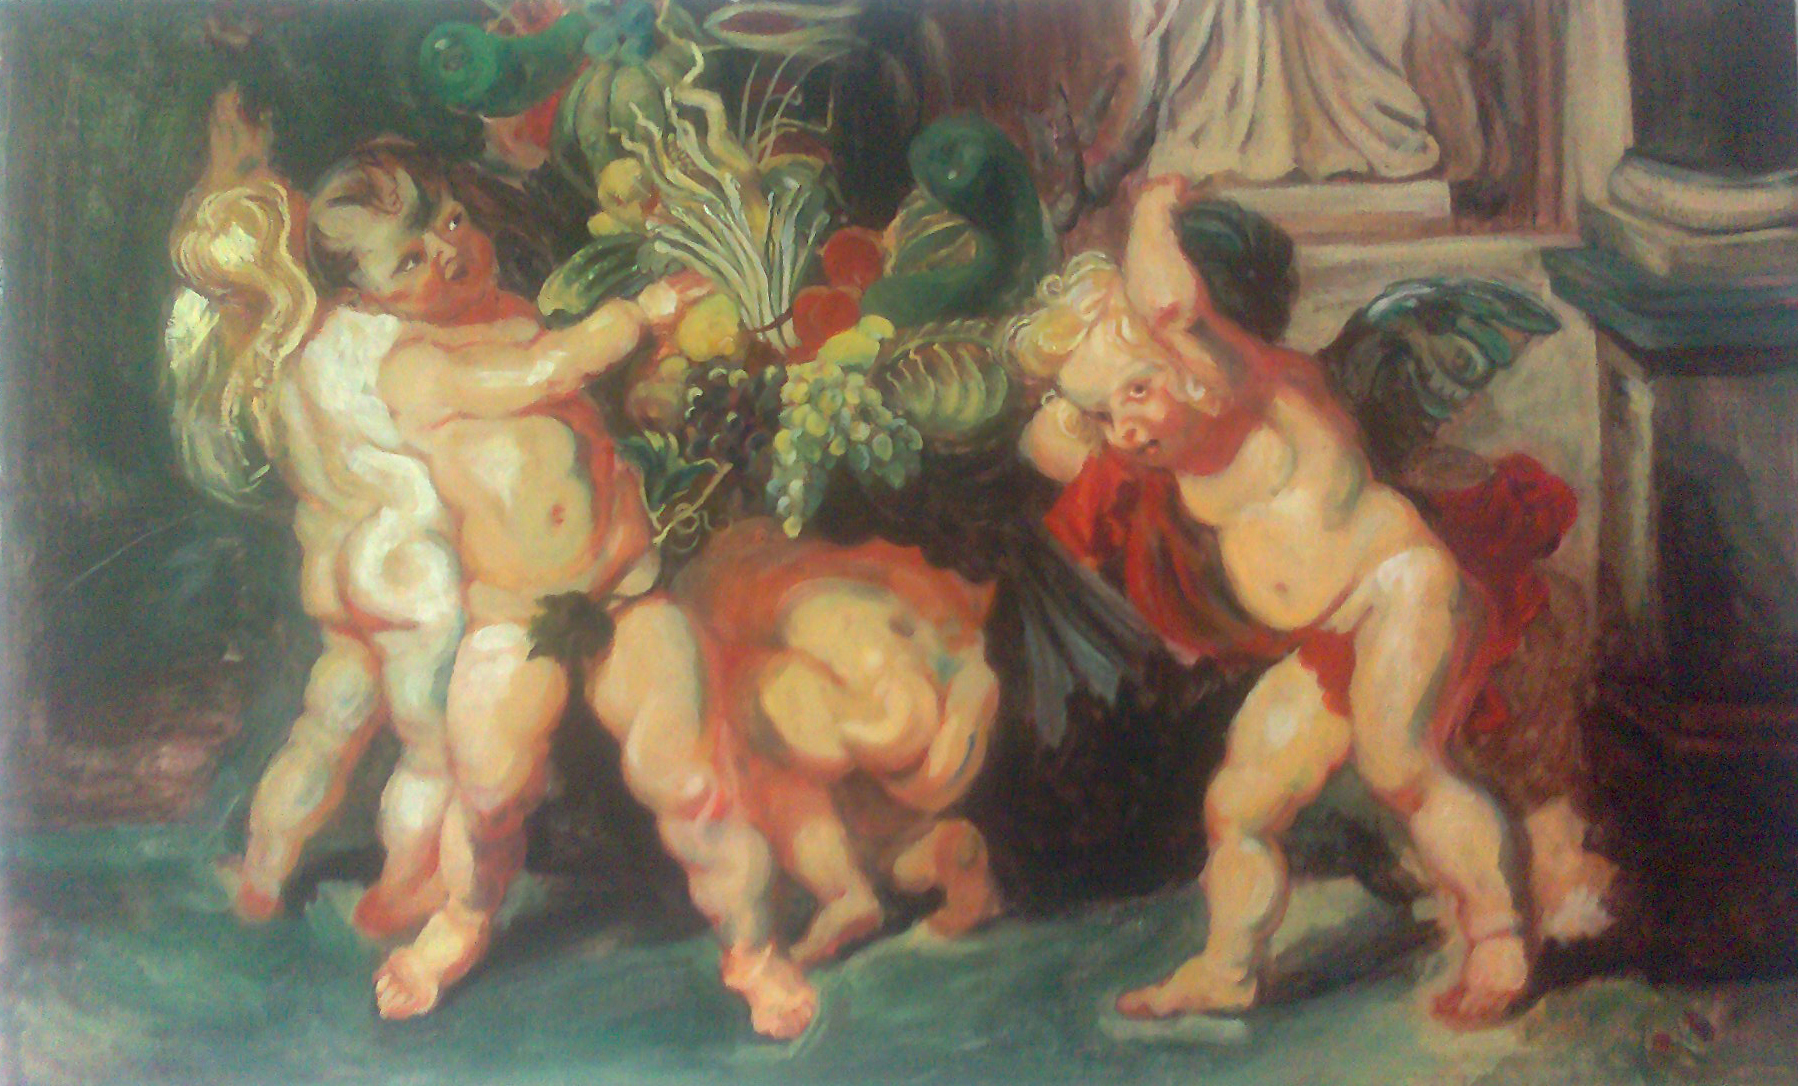 copie de Rubens au cours de dessin, peinture paris